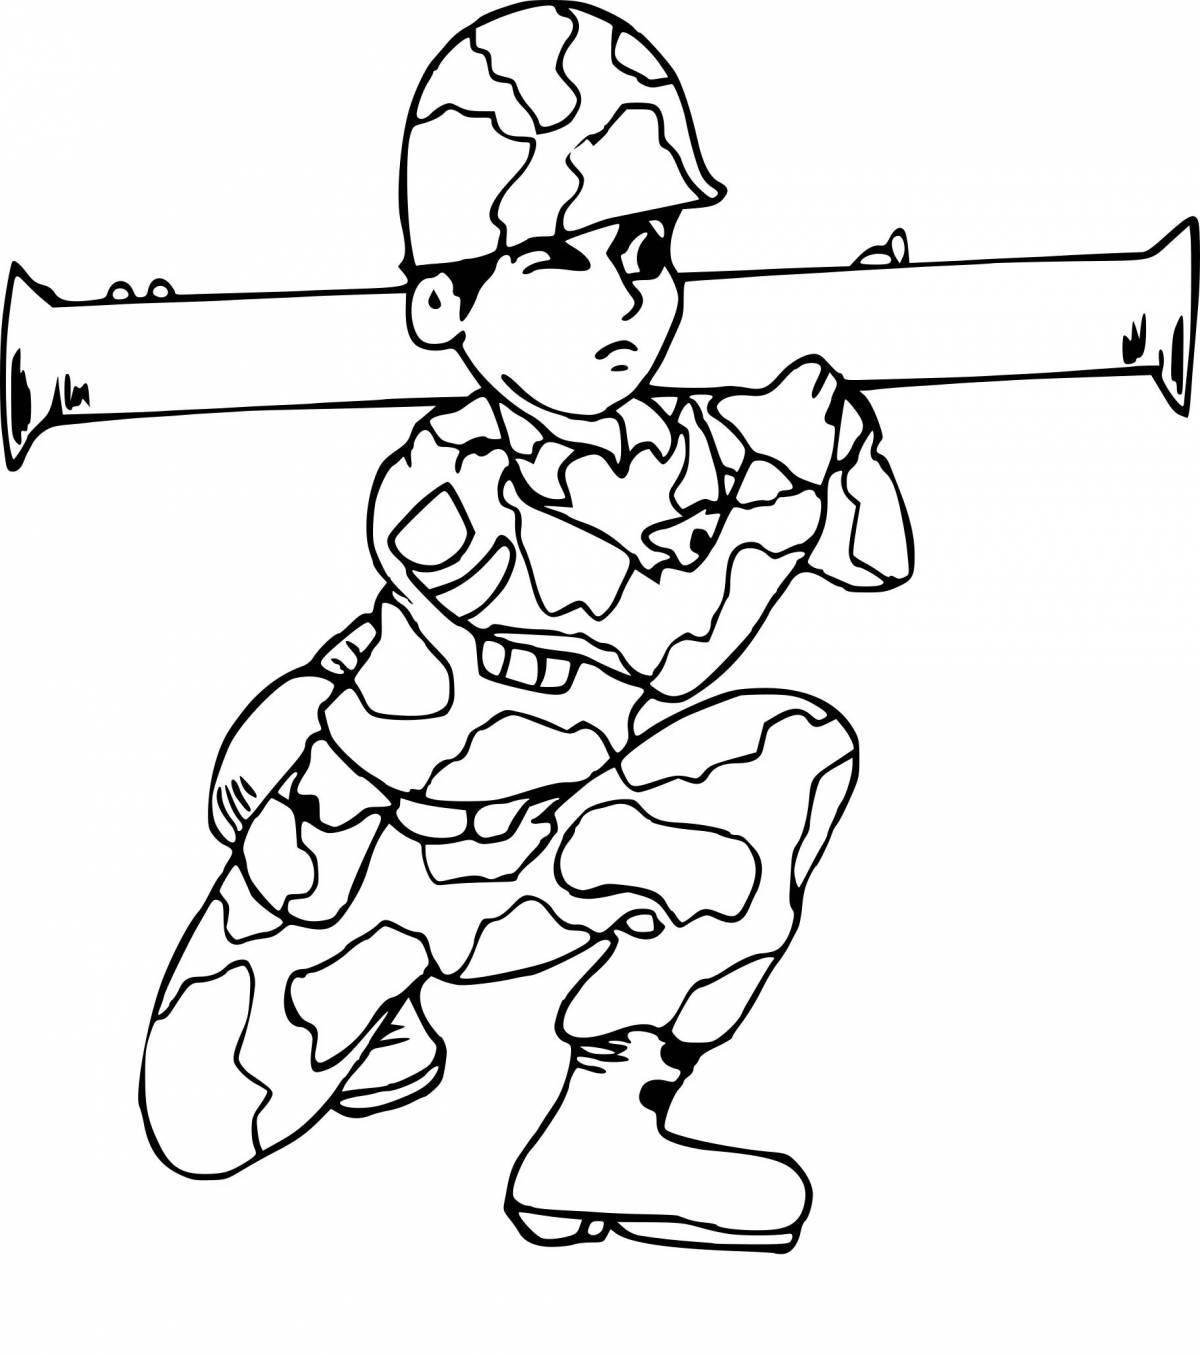 Яркая солдатская раскраска для детей